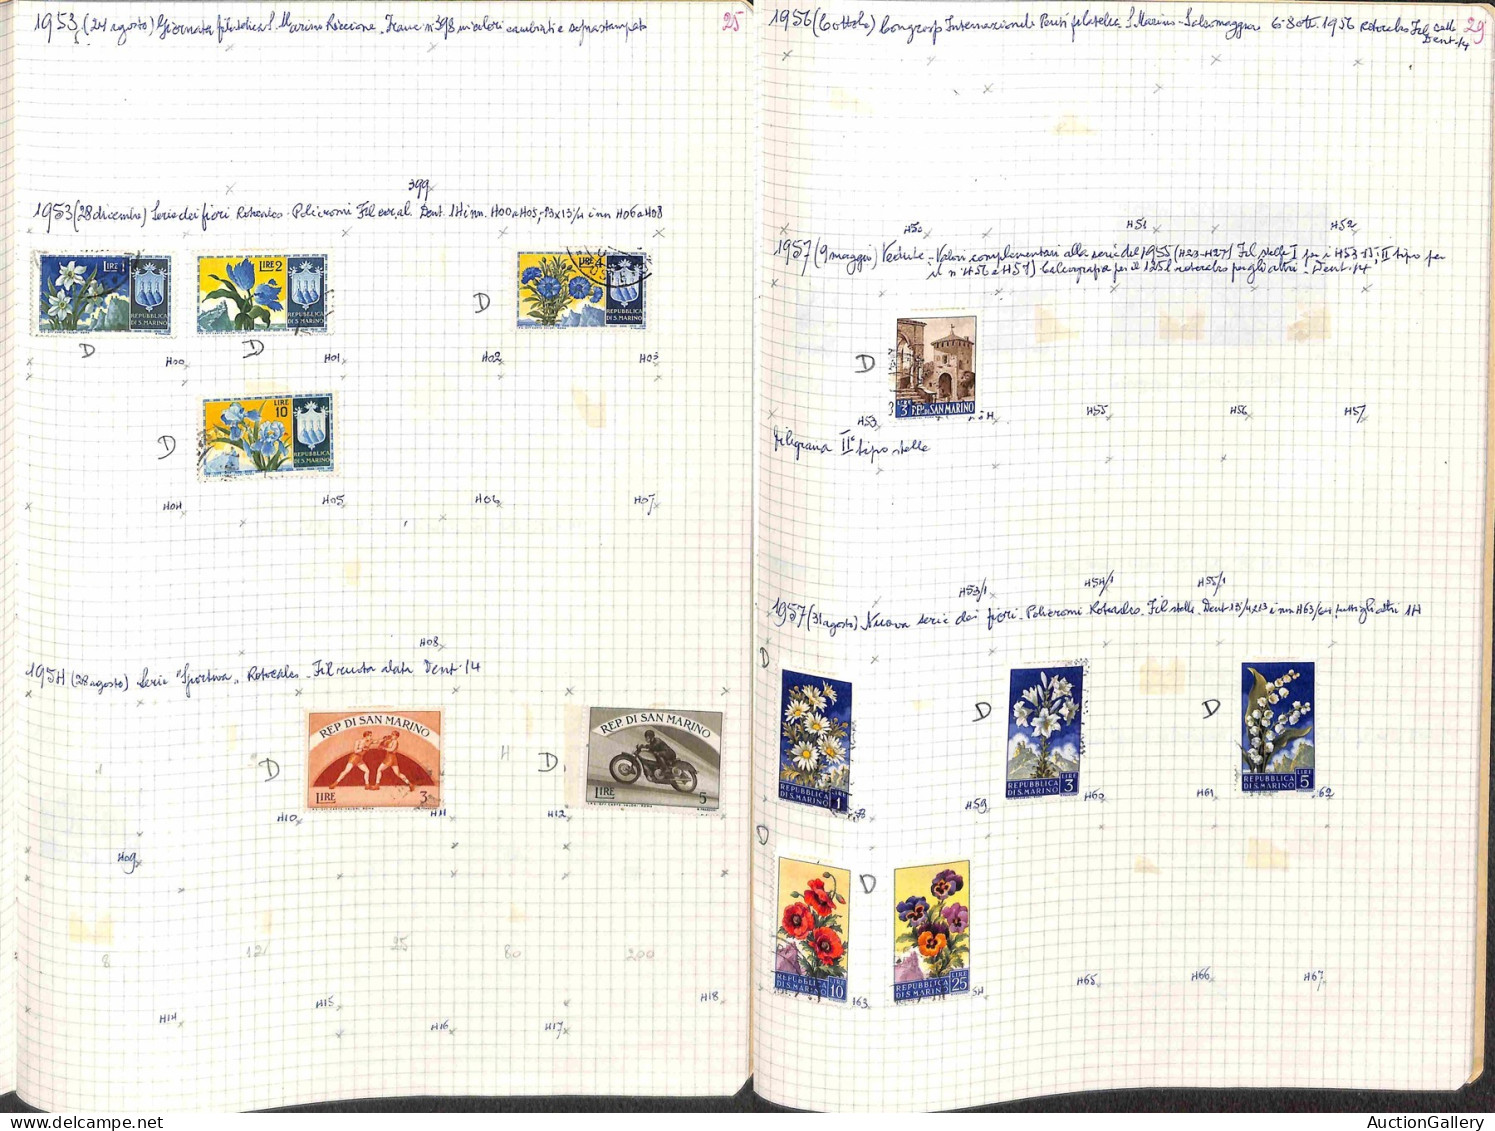 Lotti&Collezioni - SAN MARINO - 1877/1983 - Collezione avanzata del periodo in 2 album Marini più 5 quaderni artigianali